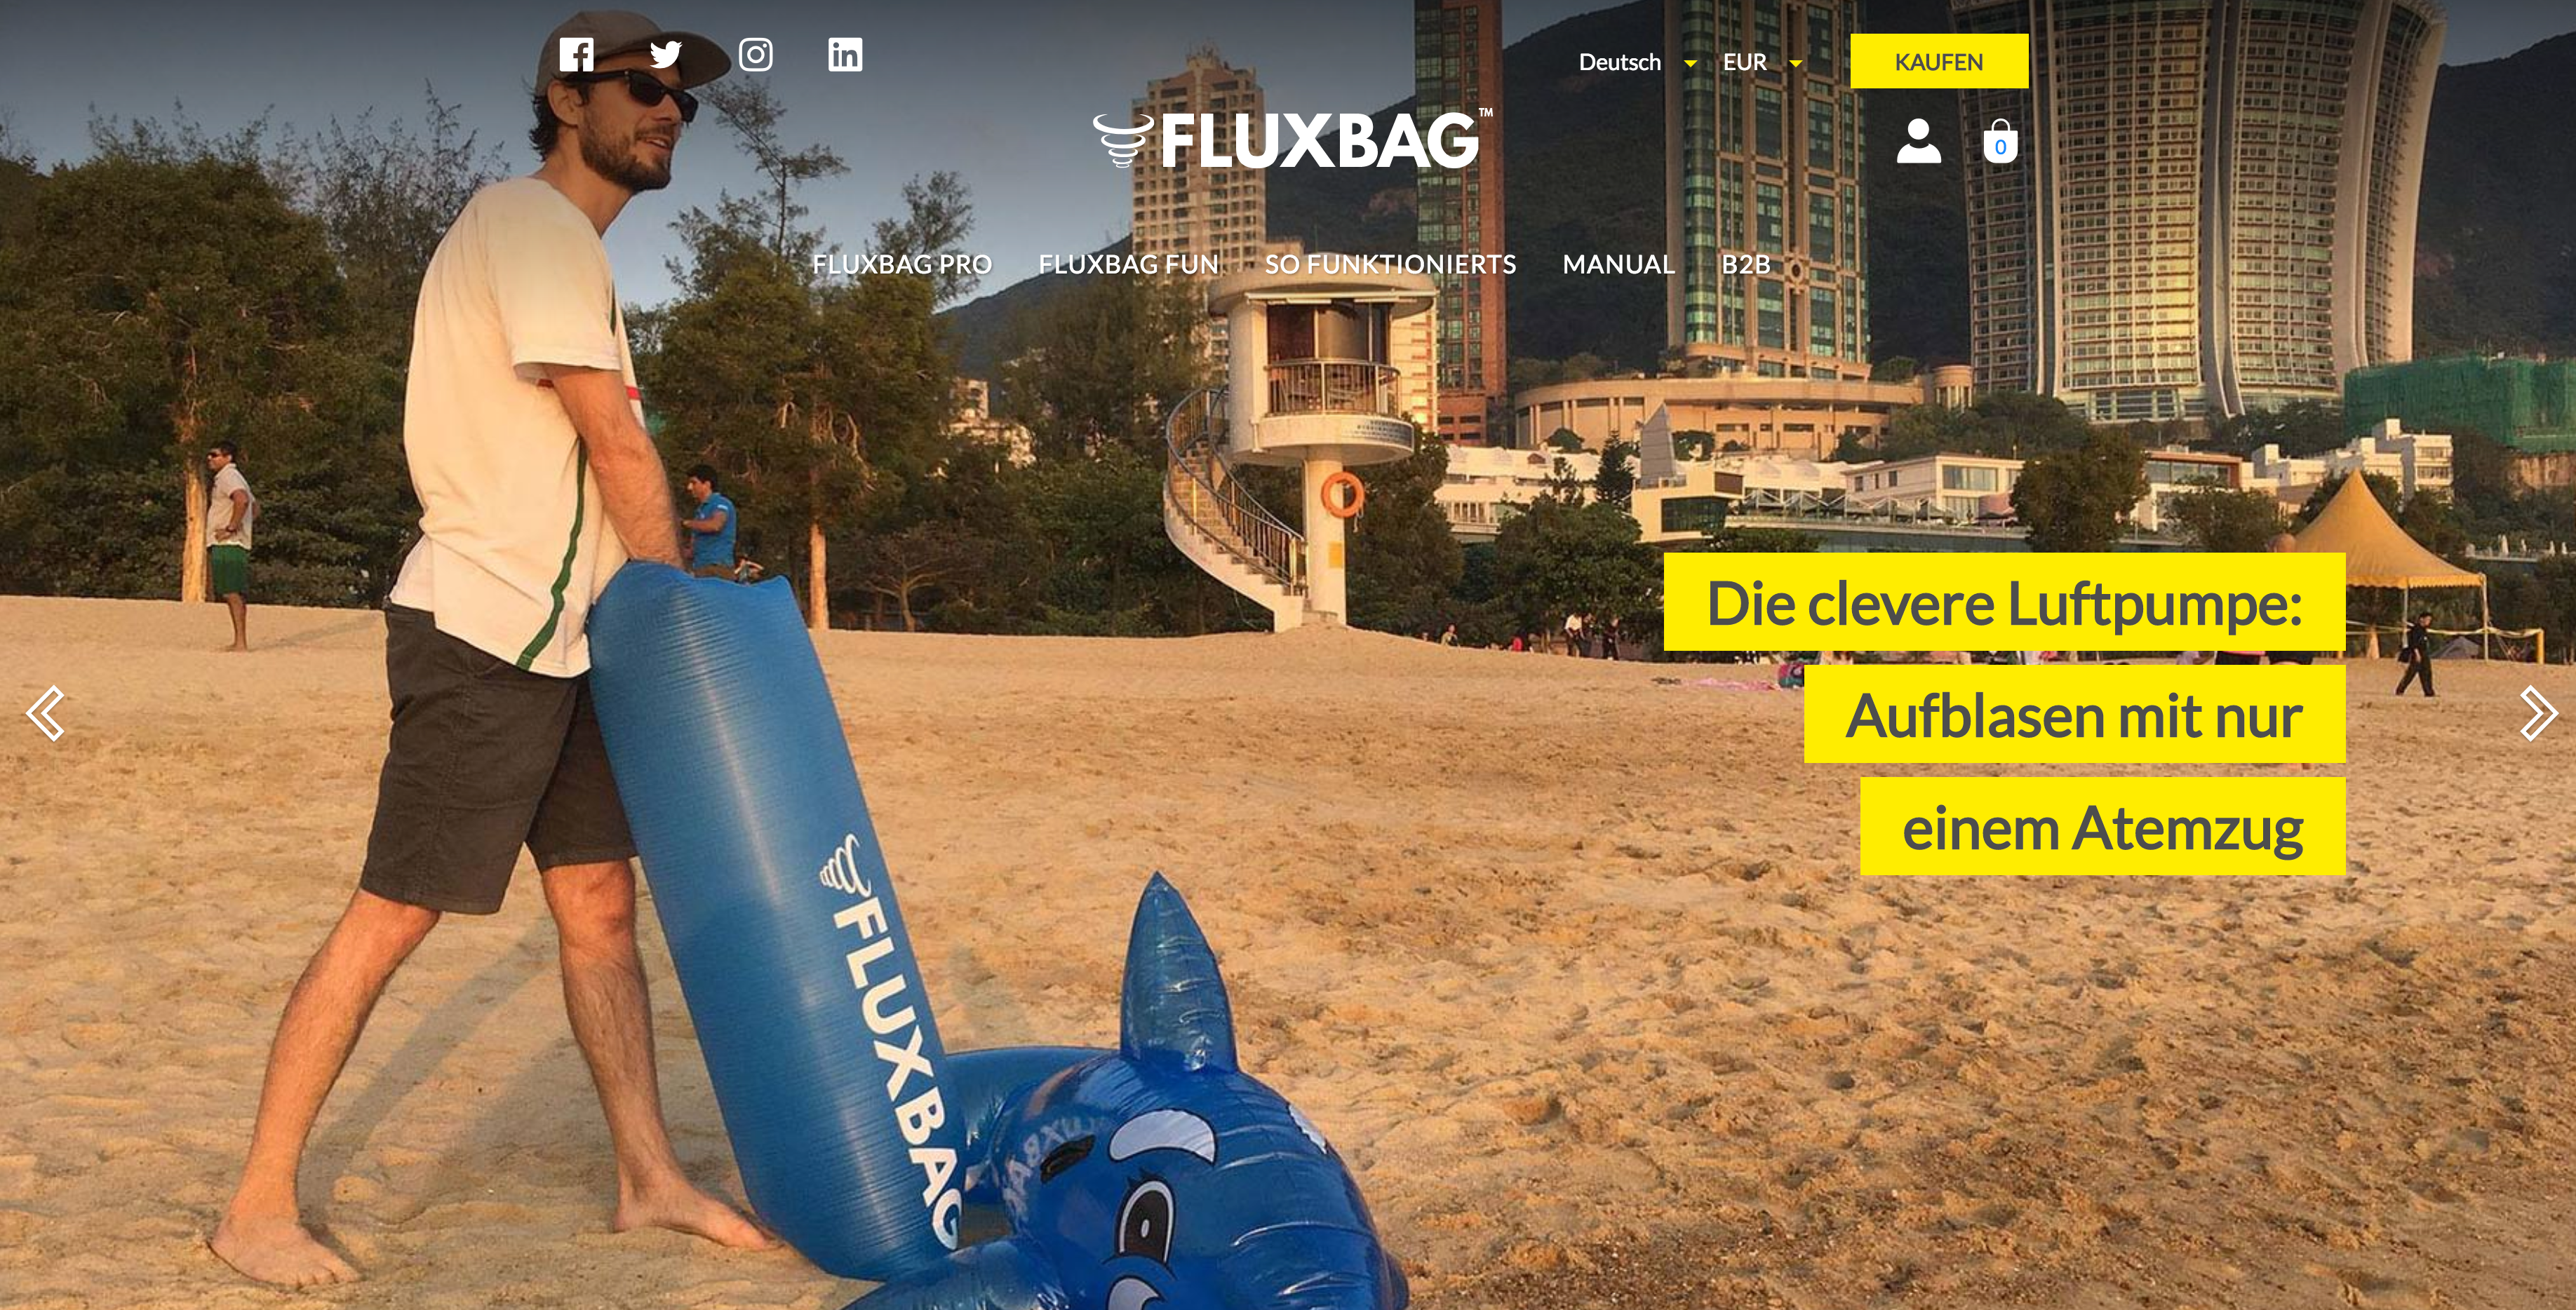 Onlineshop von Fluxbag